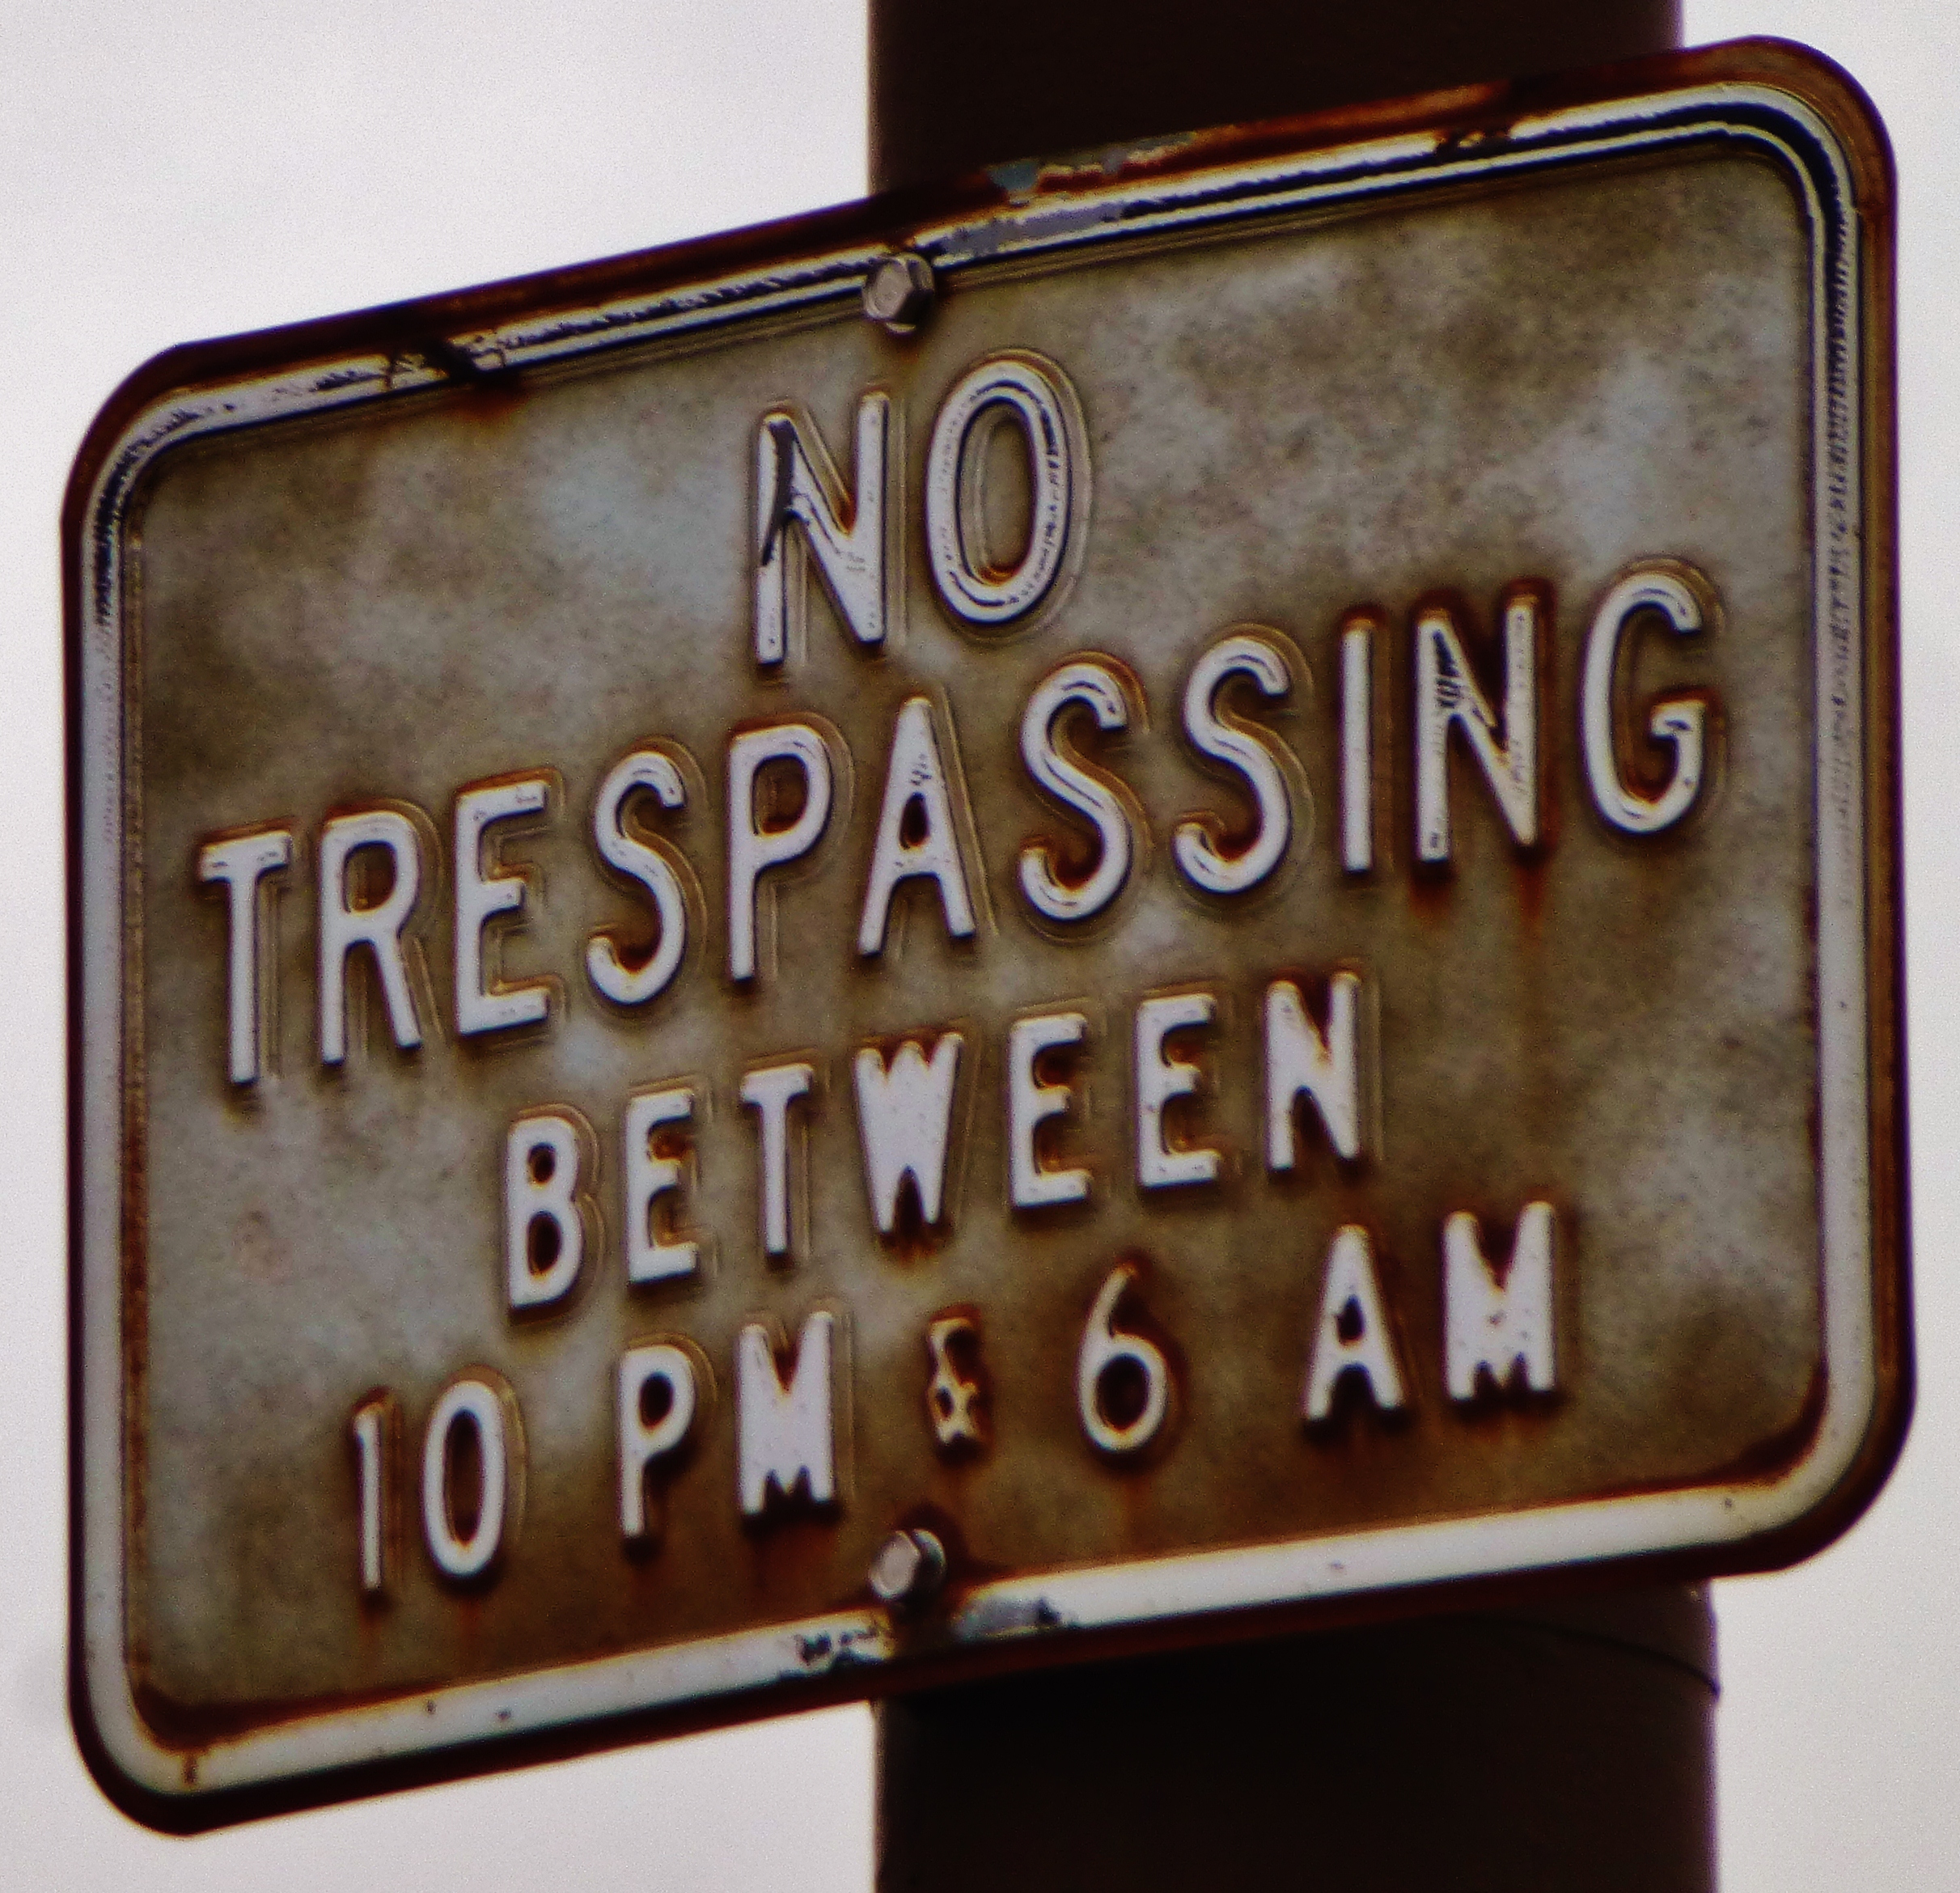 No trespassing...